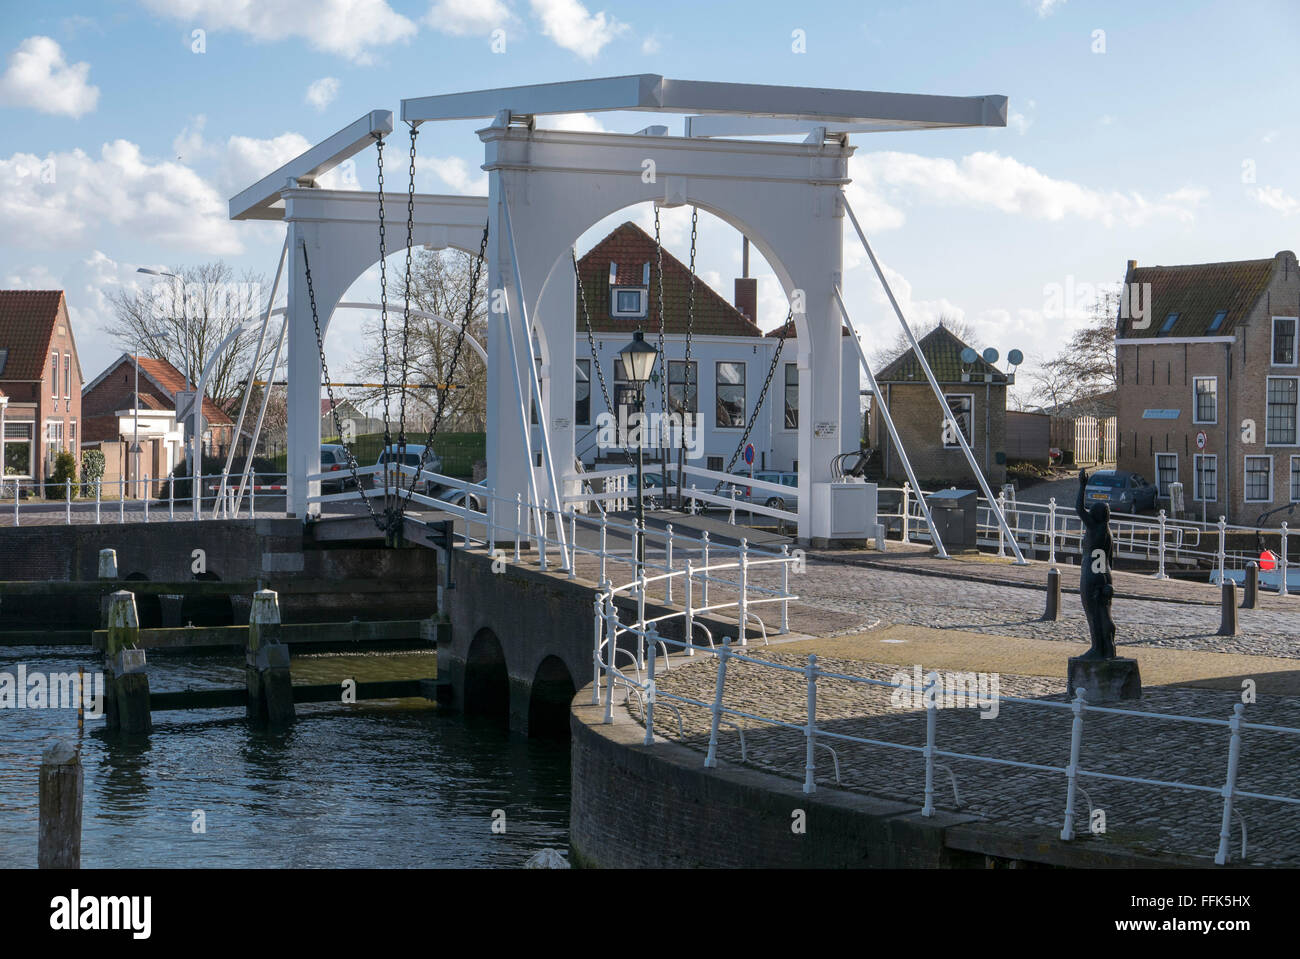 Zugbrücke am Zuidhavenpoort, Oude Haven, Zierikzee, Provinz Seeland, Niederlande | Zuidhavenpoort, Oude Haven, Zierikzee, Zeelan Stock Photo